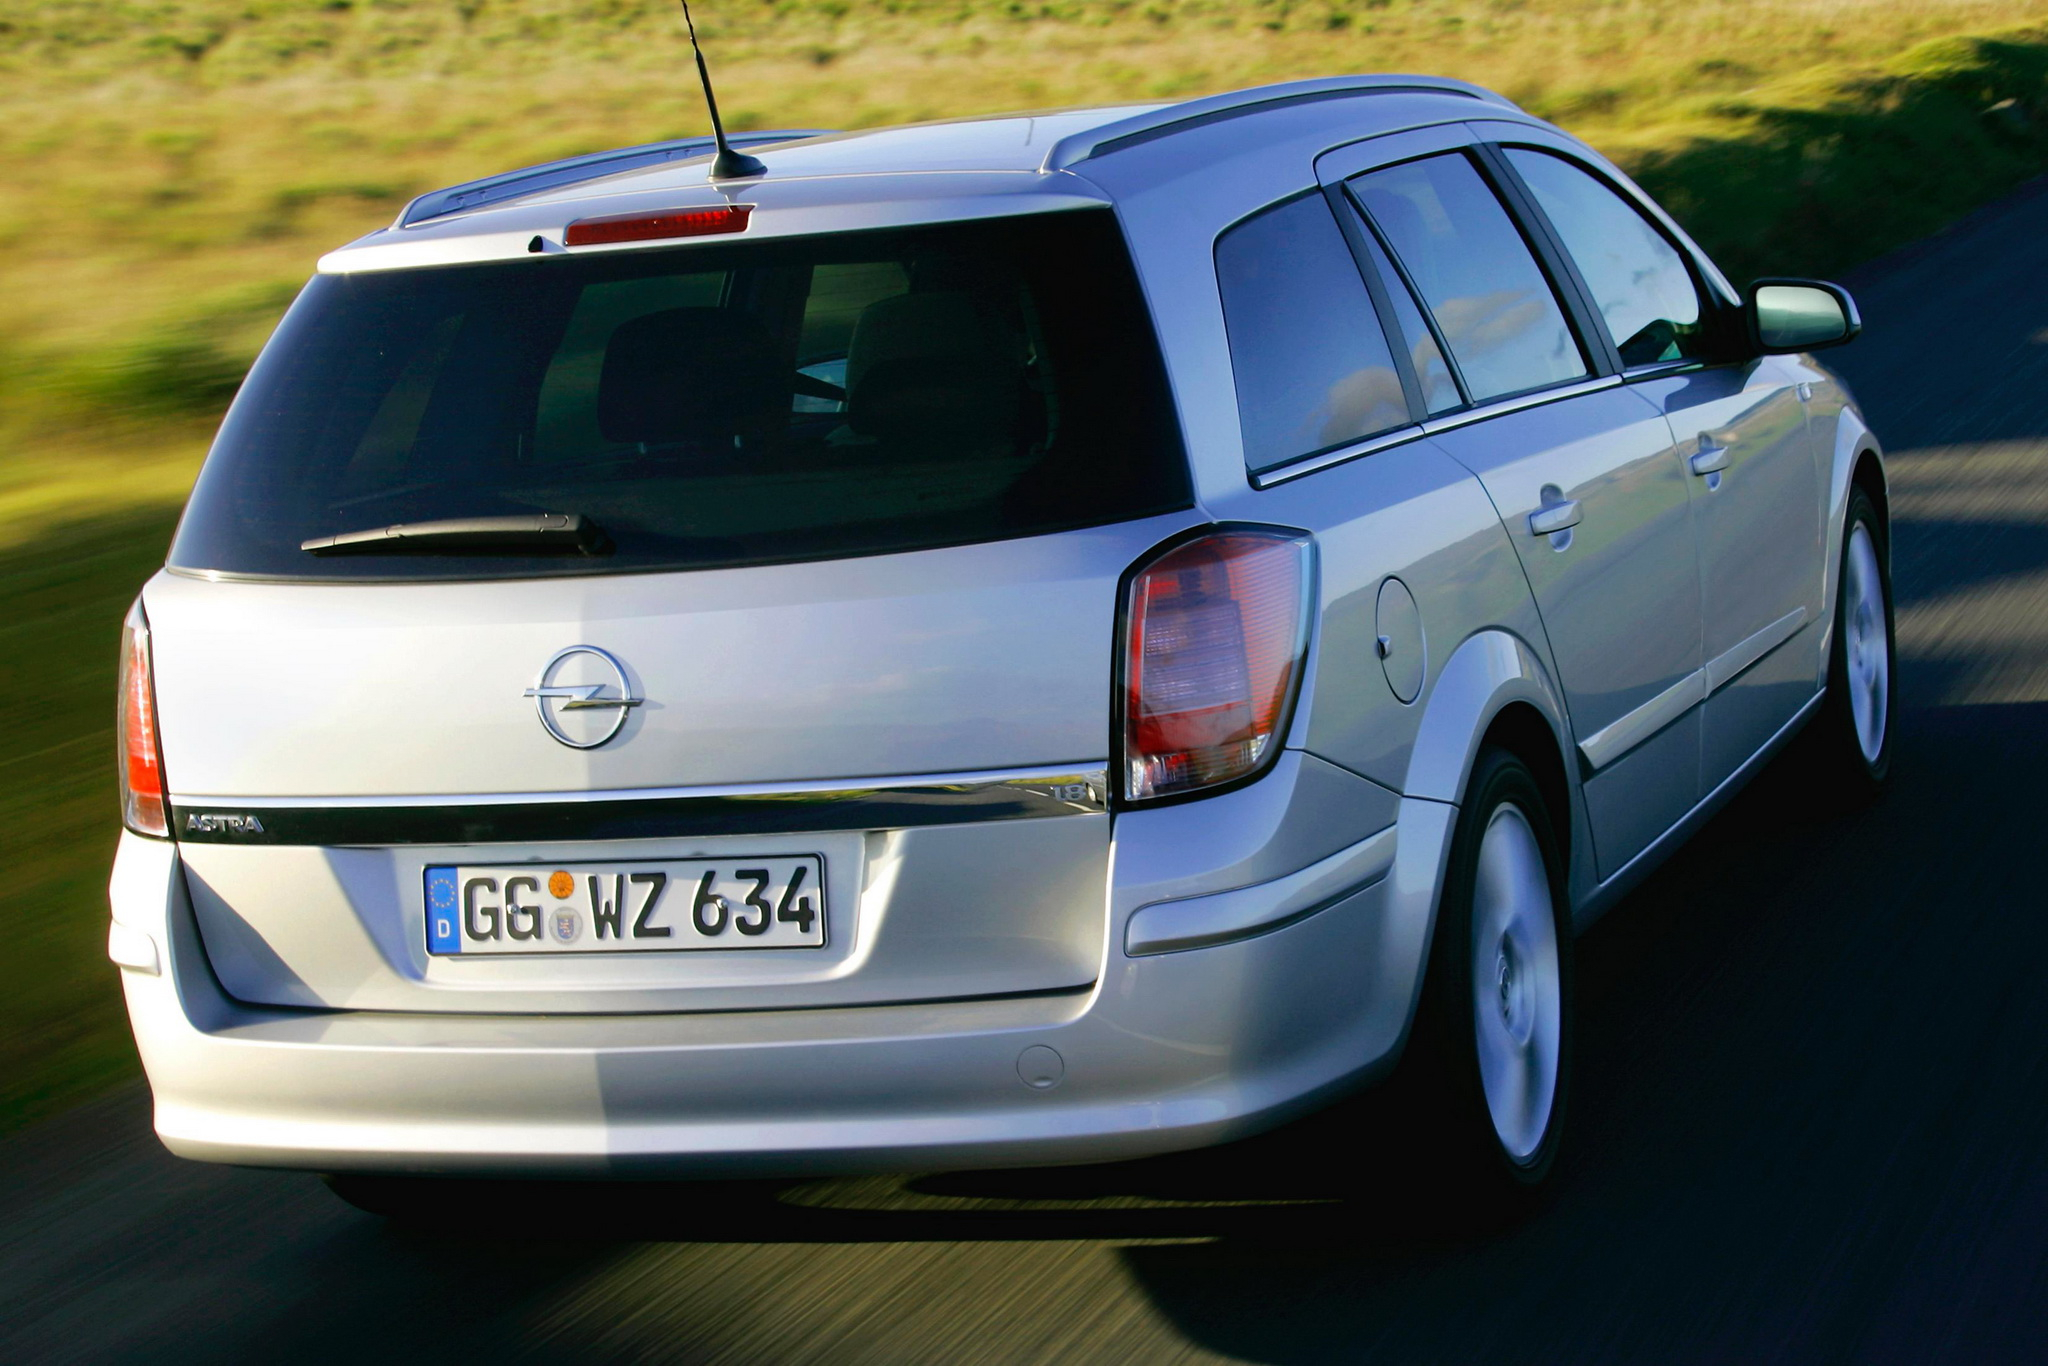 Универсал караван. Opel Astra Caravan 2007. Opel Astra 2004 универсал. Opel Astra Caravan универсал. Opel Astra 2004-2007 универсал.